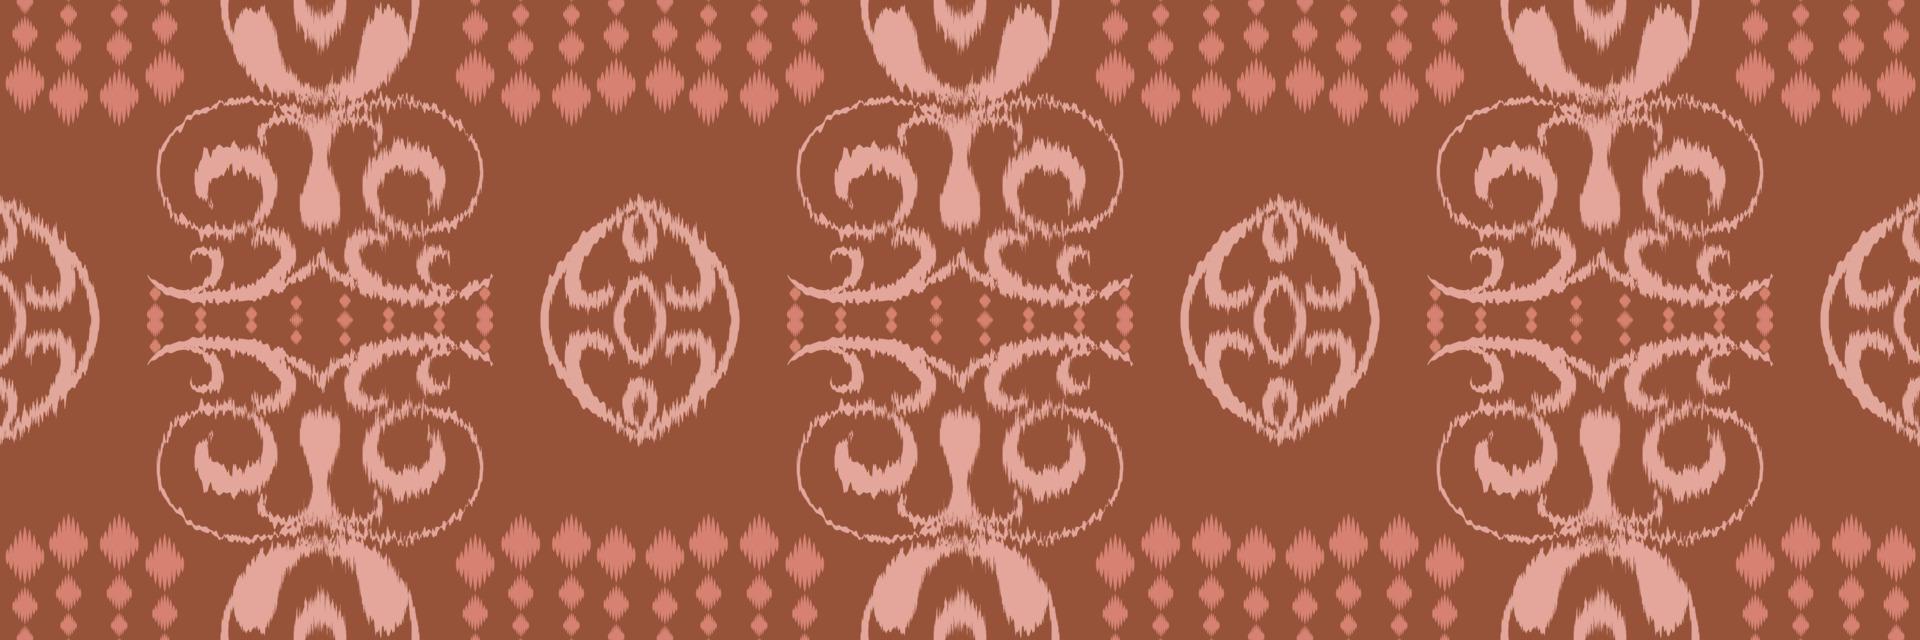 motivo ikat damasco batik tessile senza soluzione di continuità modello digitale vettore design per Stampa saree Kurti Borneo tessuto confine spazzola simboli campioni elegante